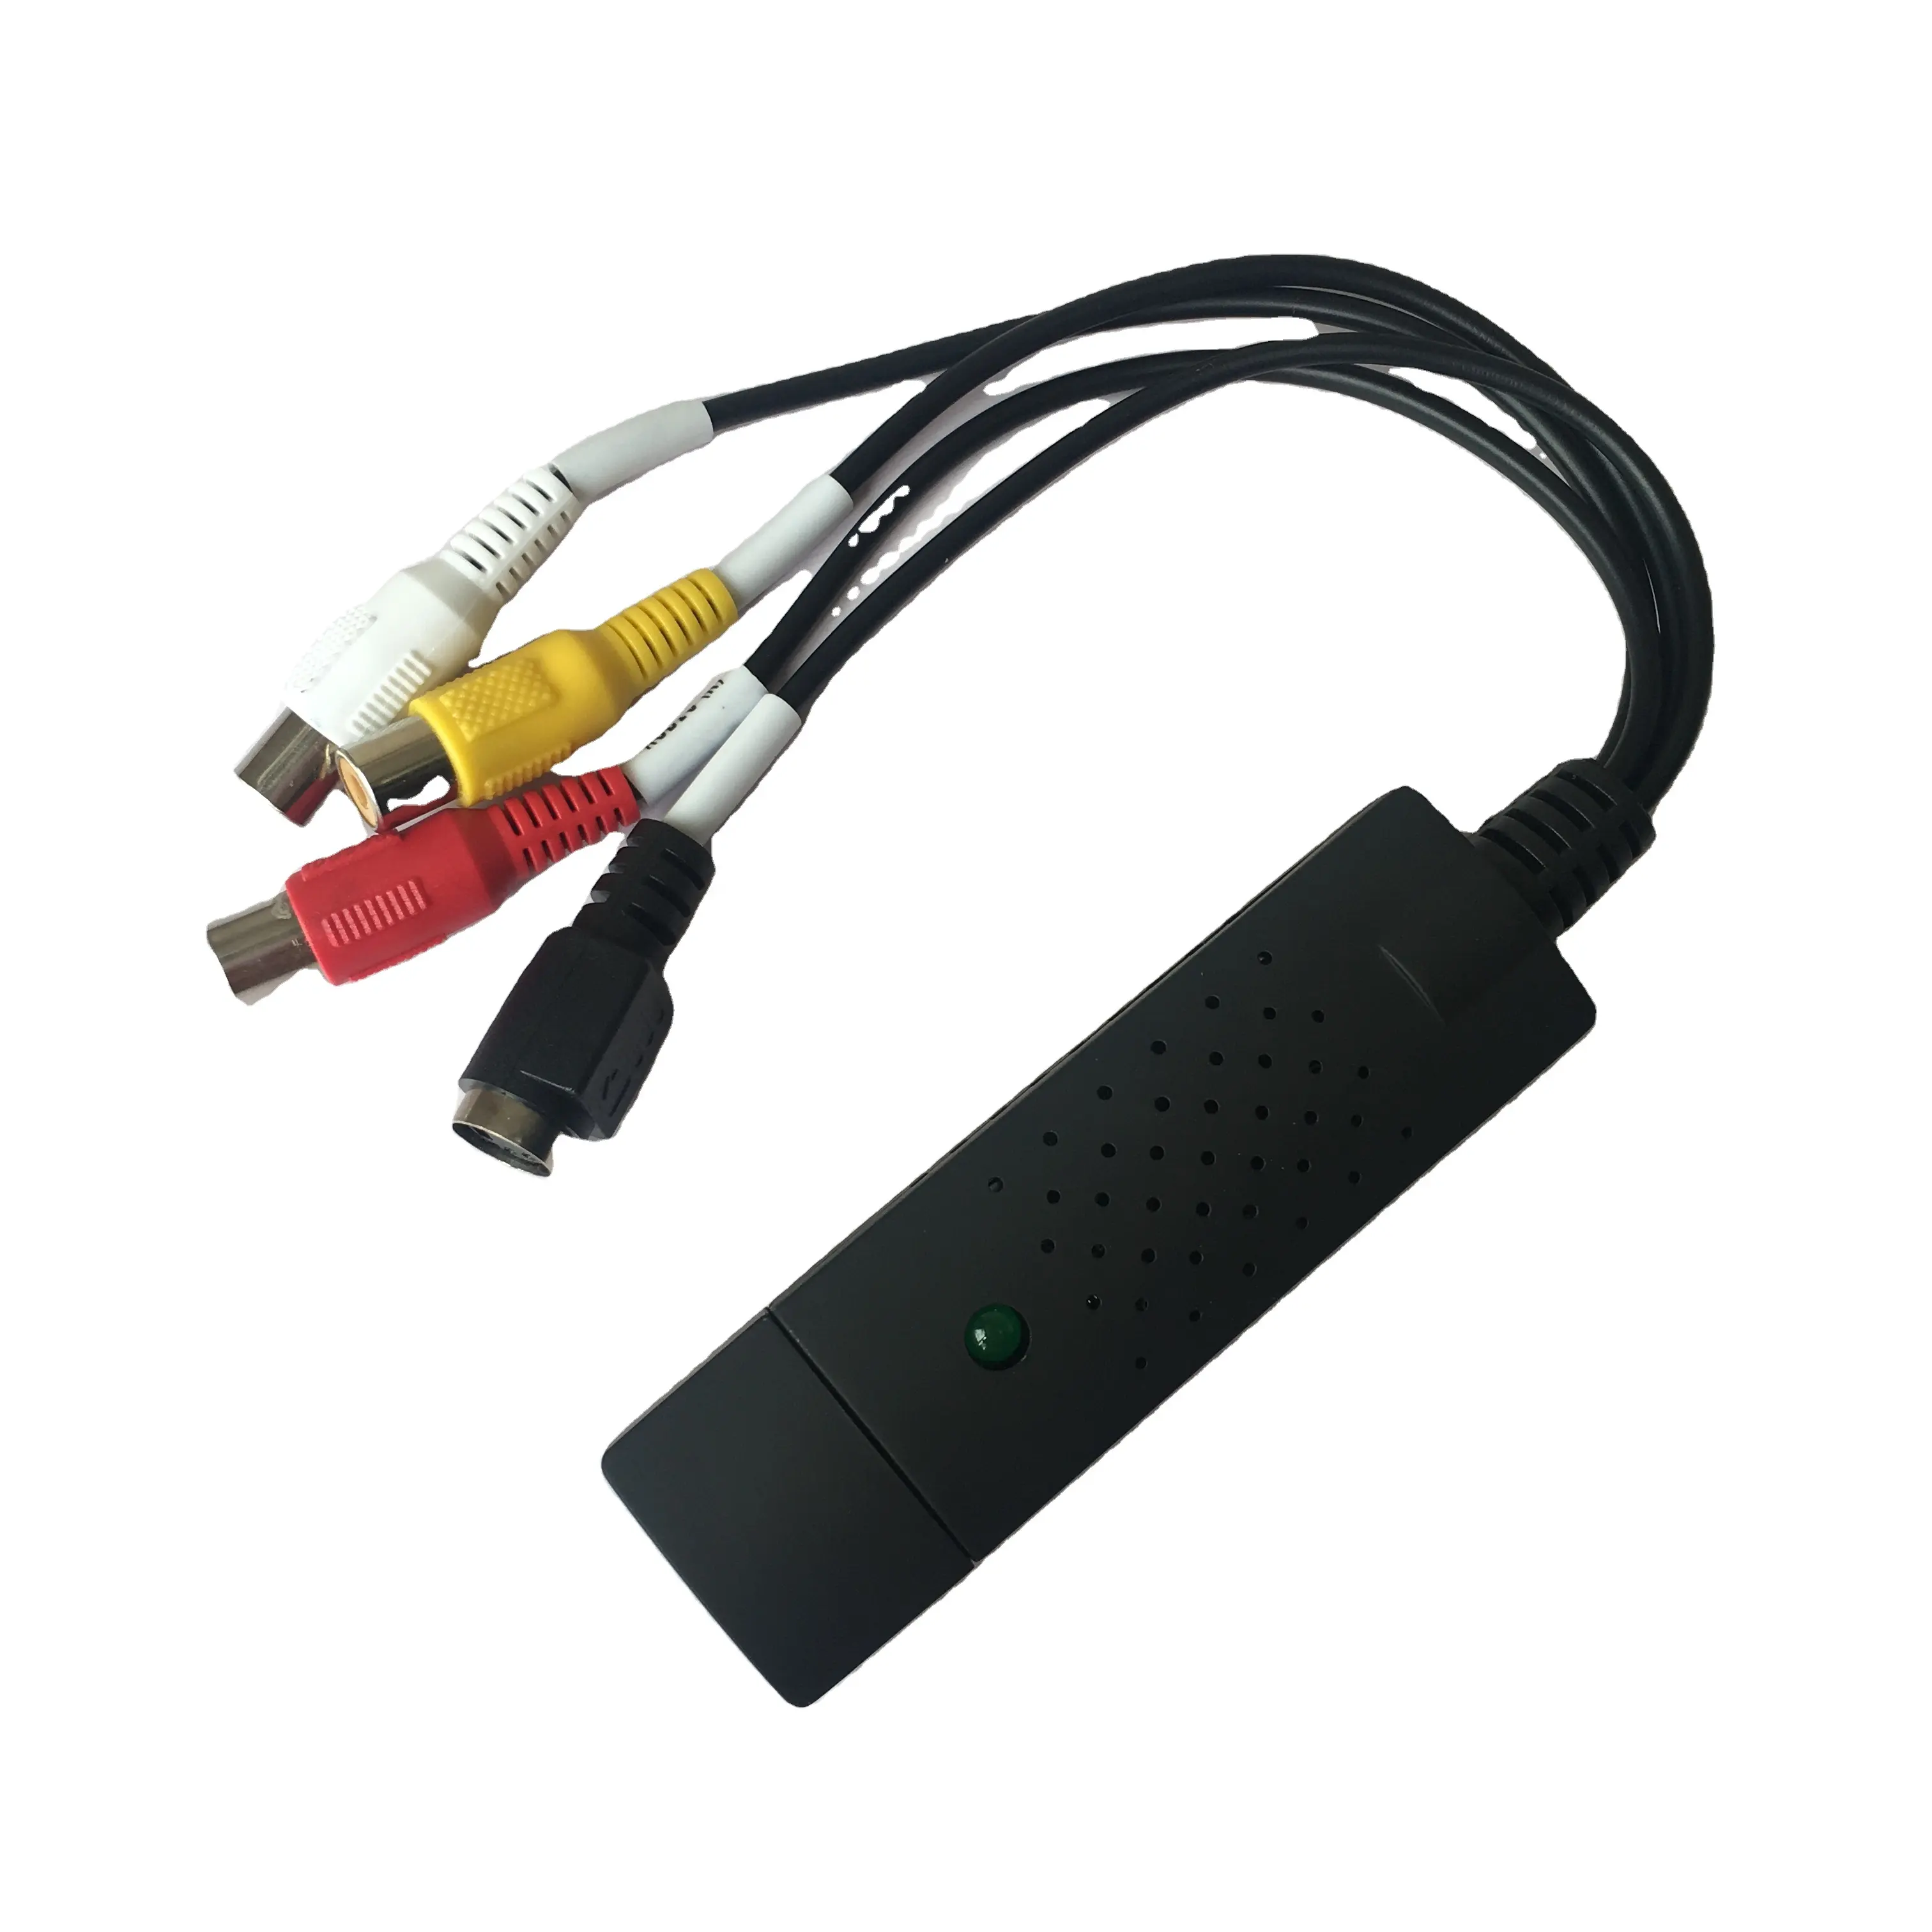 Видеозахват USB 2,0, видеоадаптер с аудиозахватом и Deit, высококачественное видео и аудио